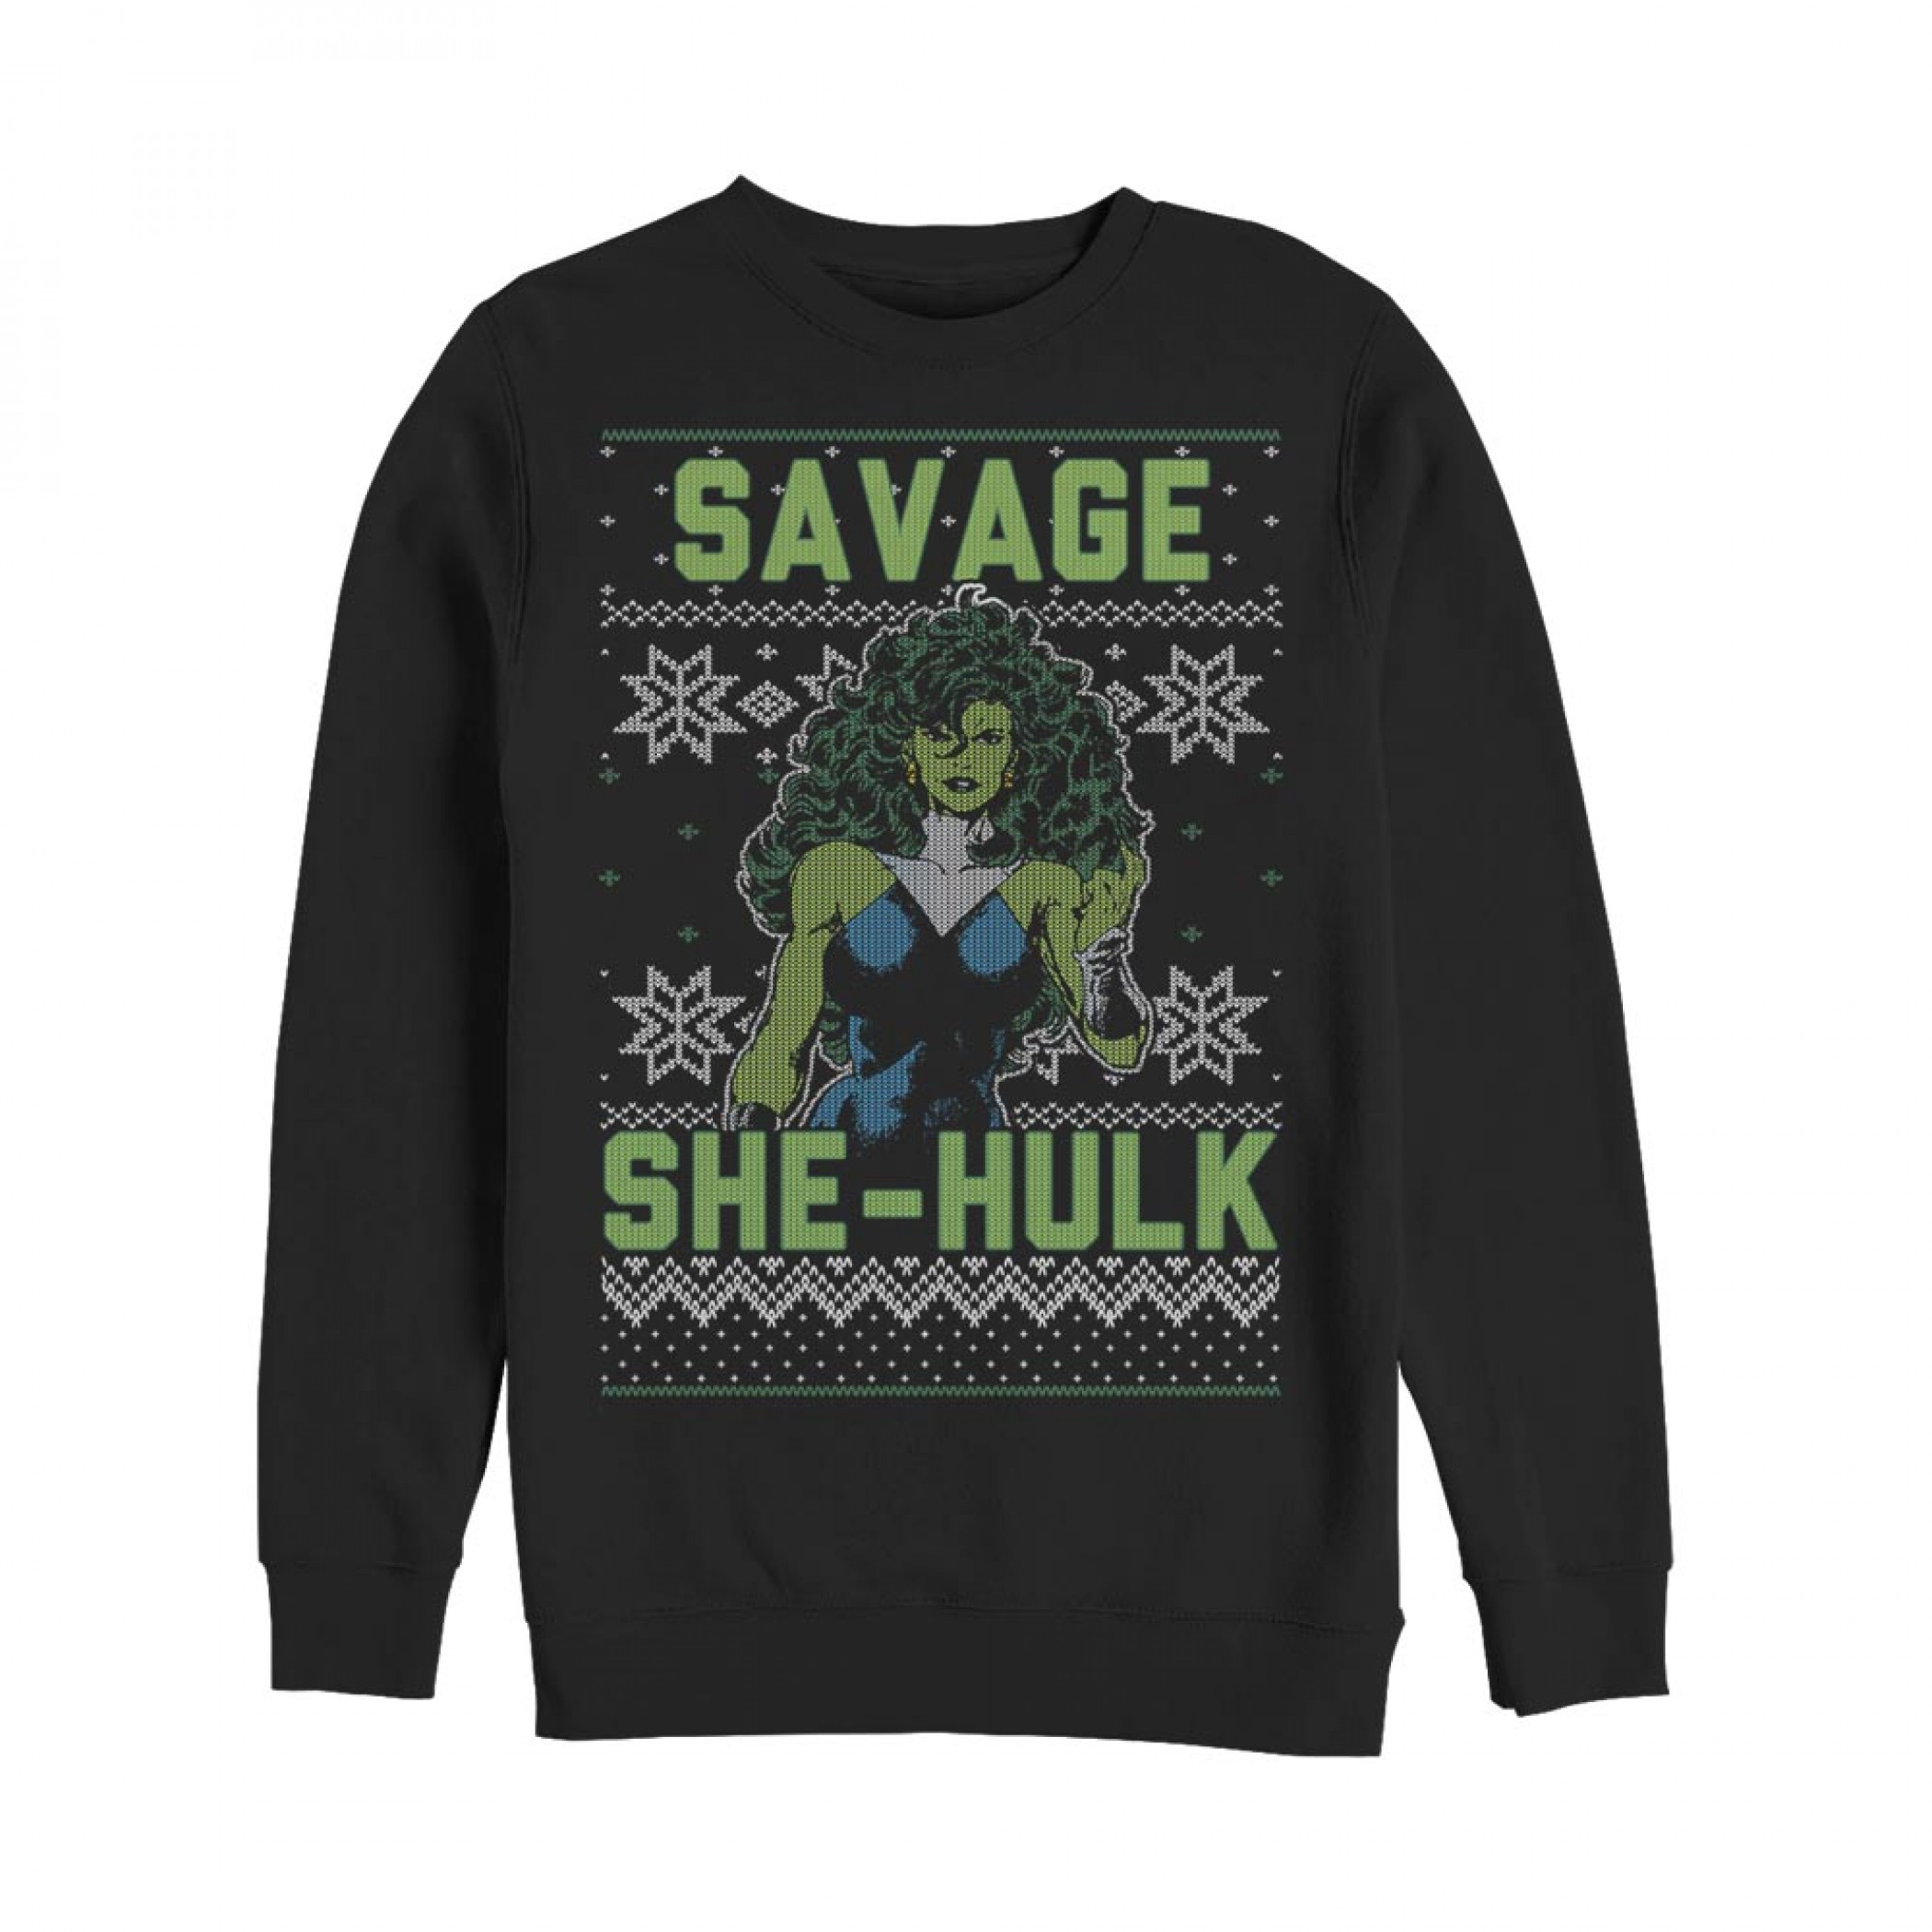 The Savage She-Hulk Ugly Christmas Sweatshirt